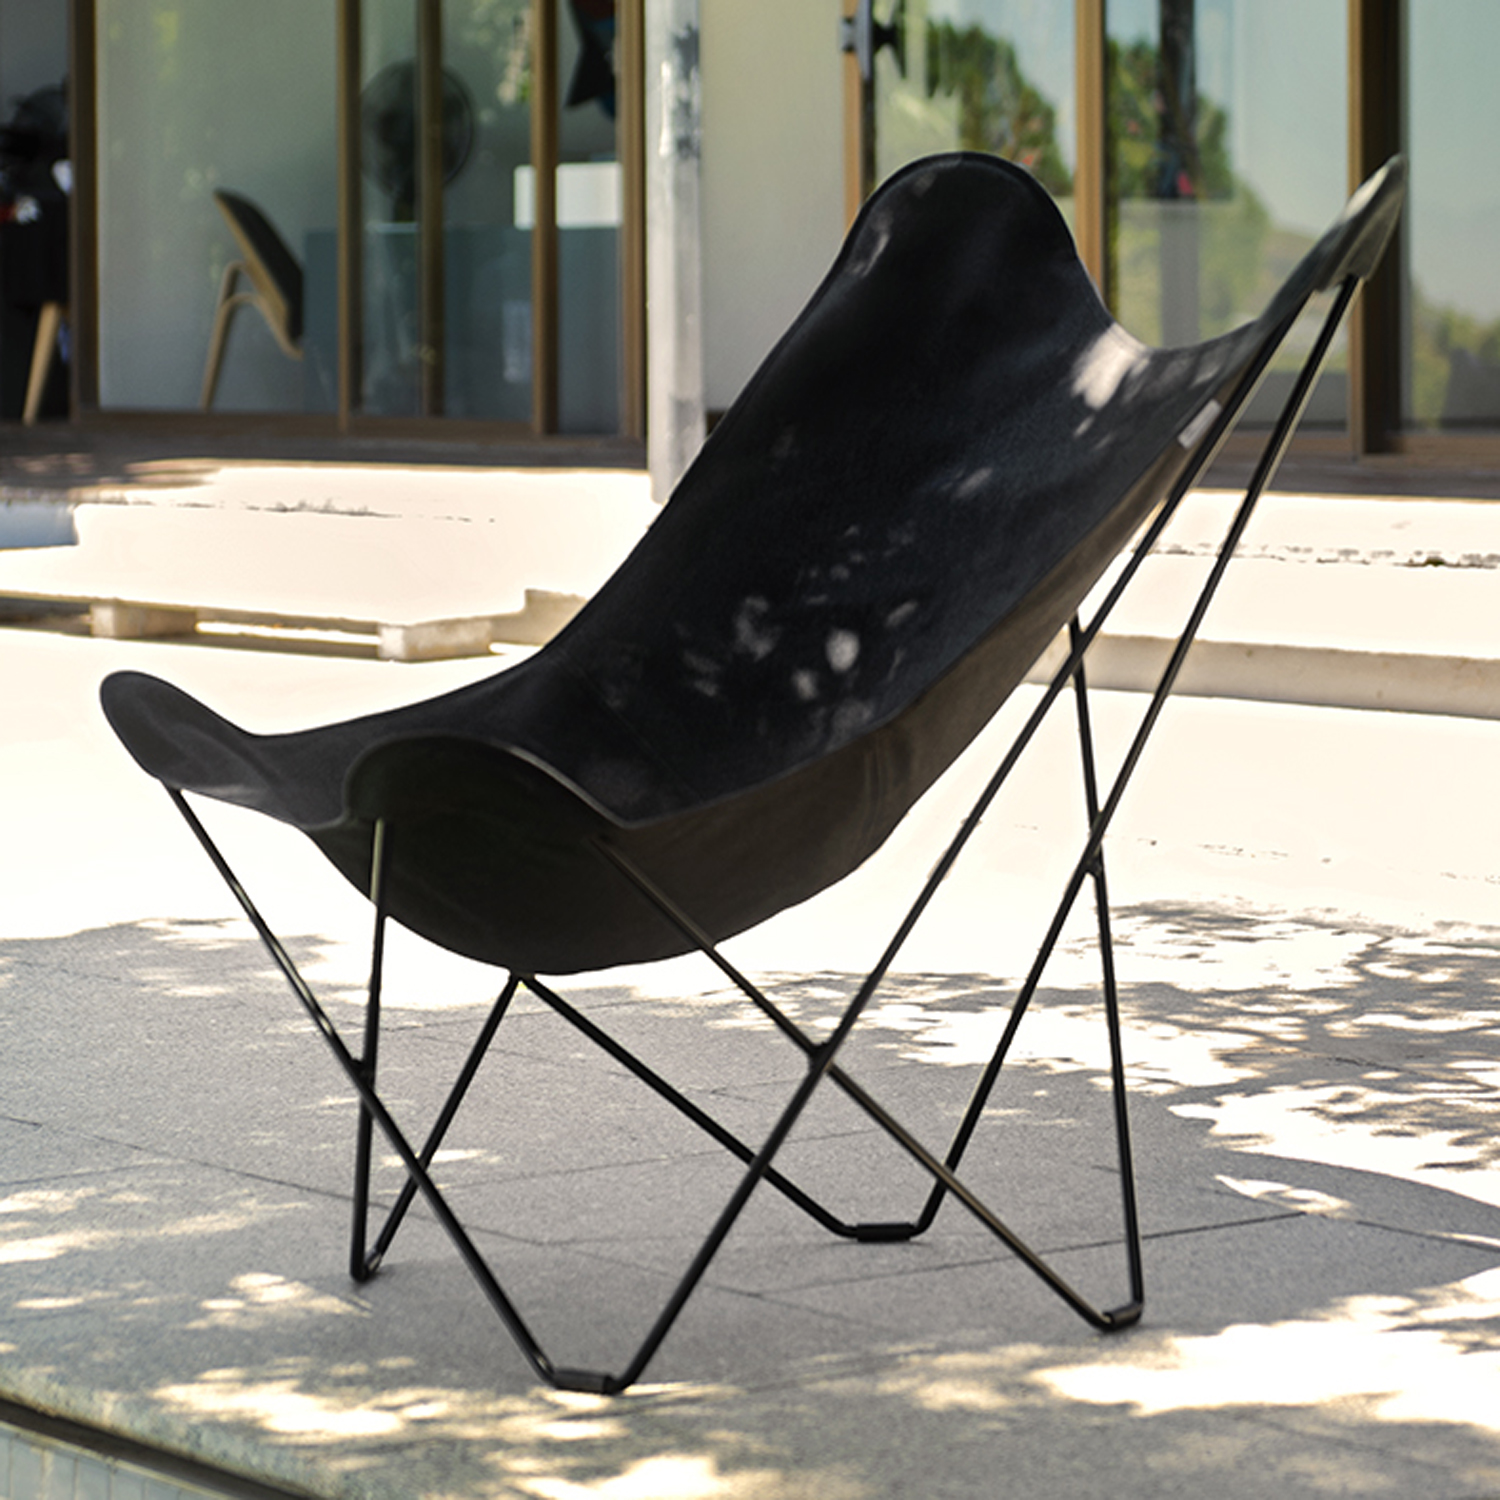 CUERODESIGN Outdoorsessel Sunshine Mariposa Charcoal Pique mit schwarzem Stahlgestell und Sunbrella-Textil